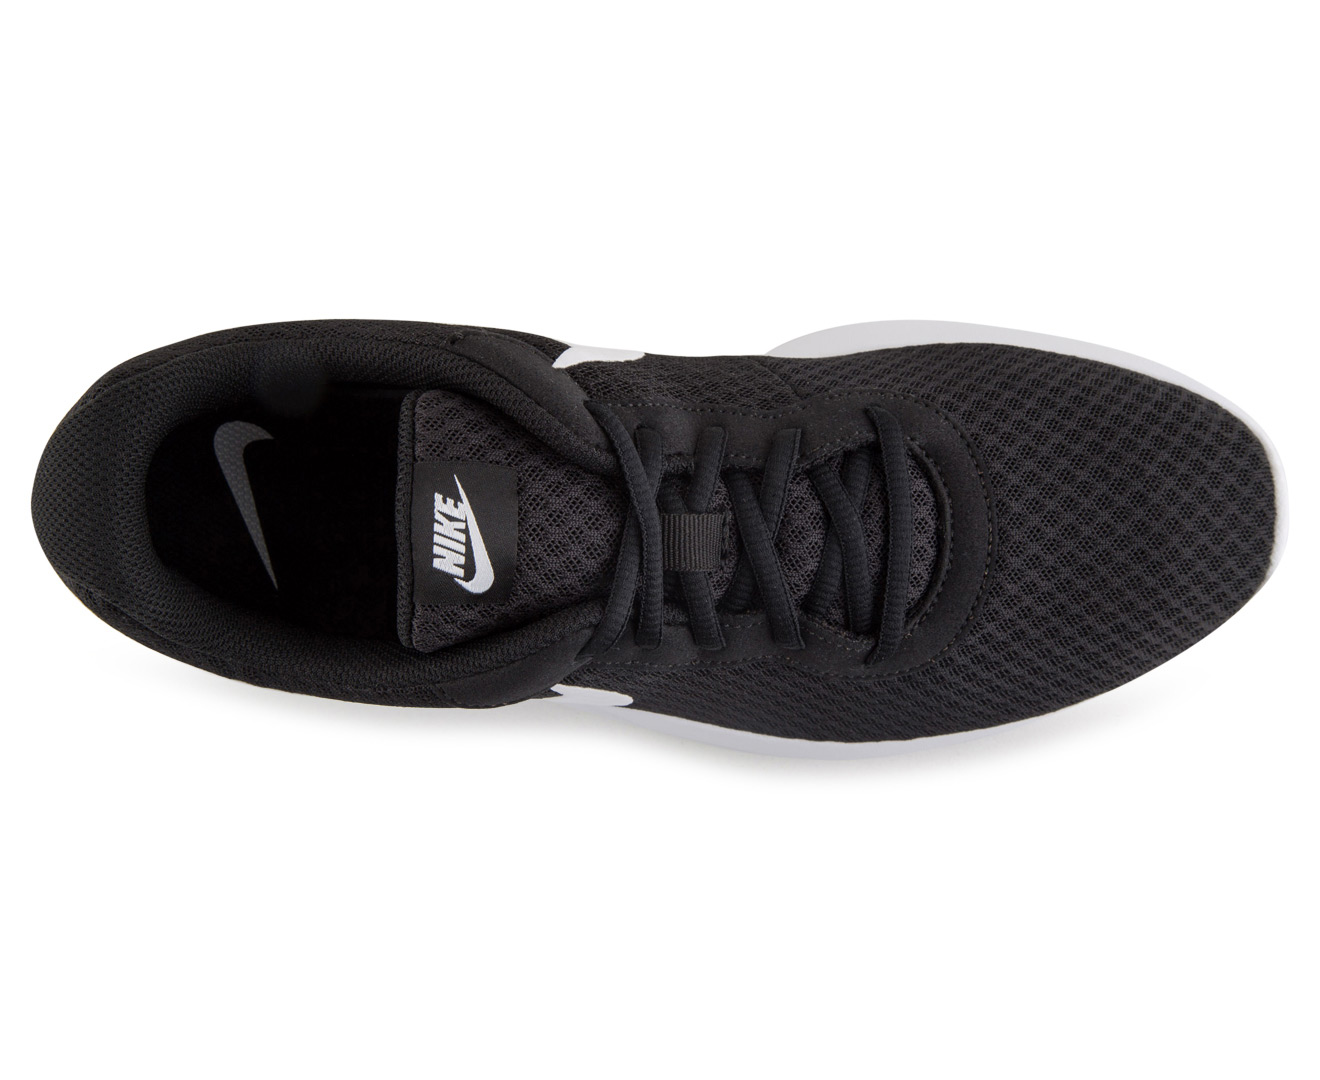 Nike Men's Tanjun Shoe - Black/White | Catch.co.nz